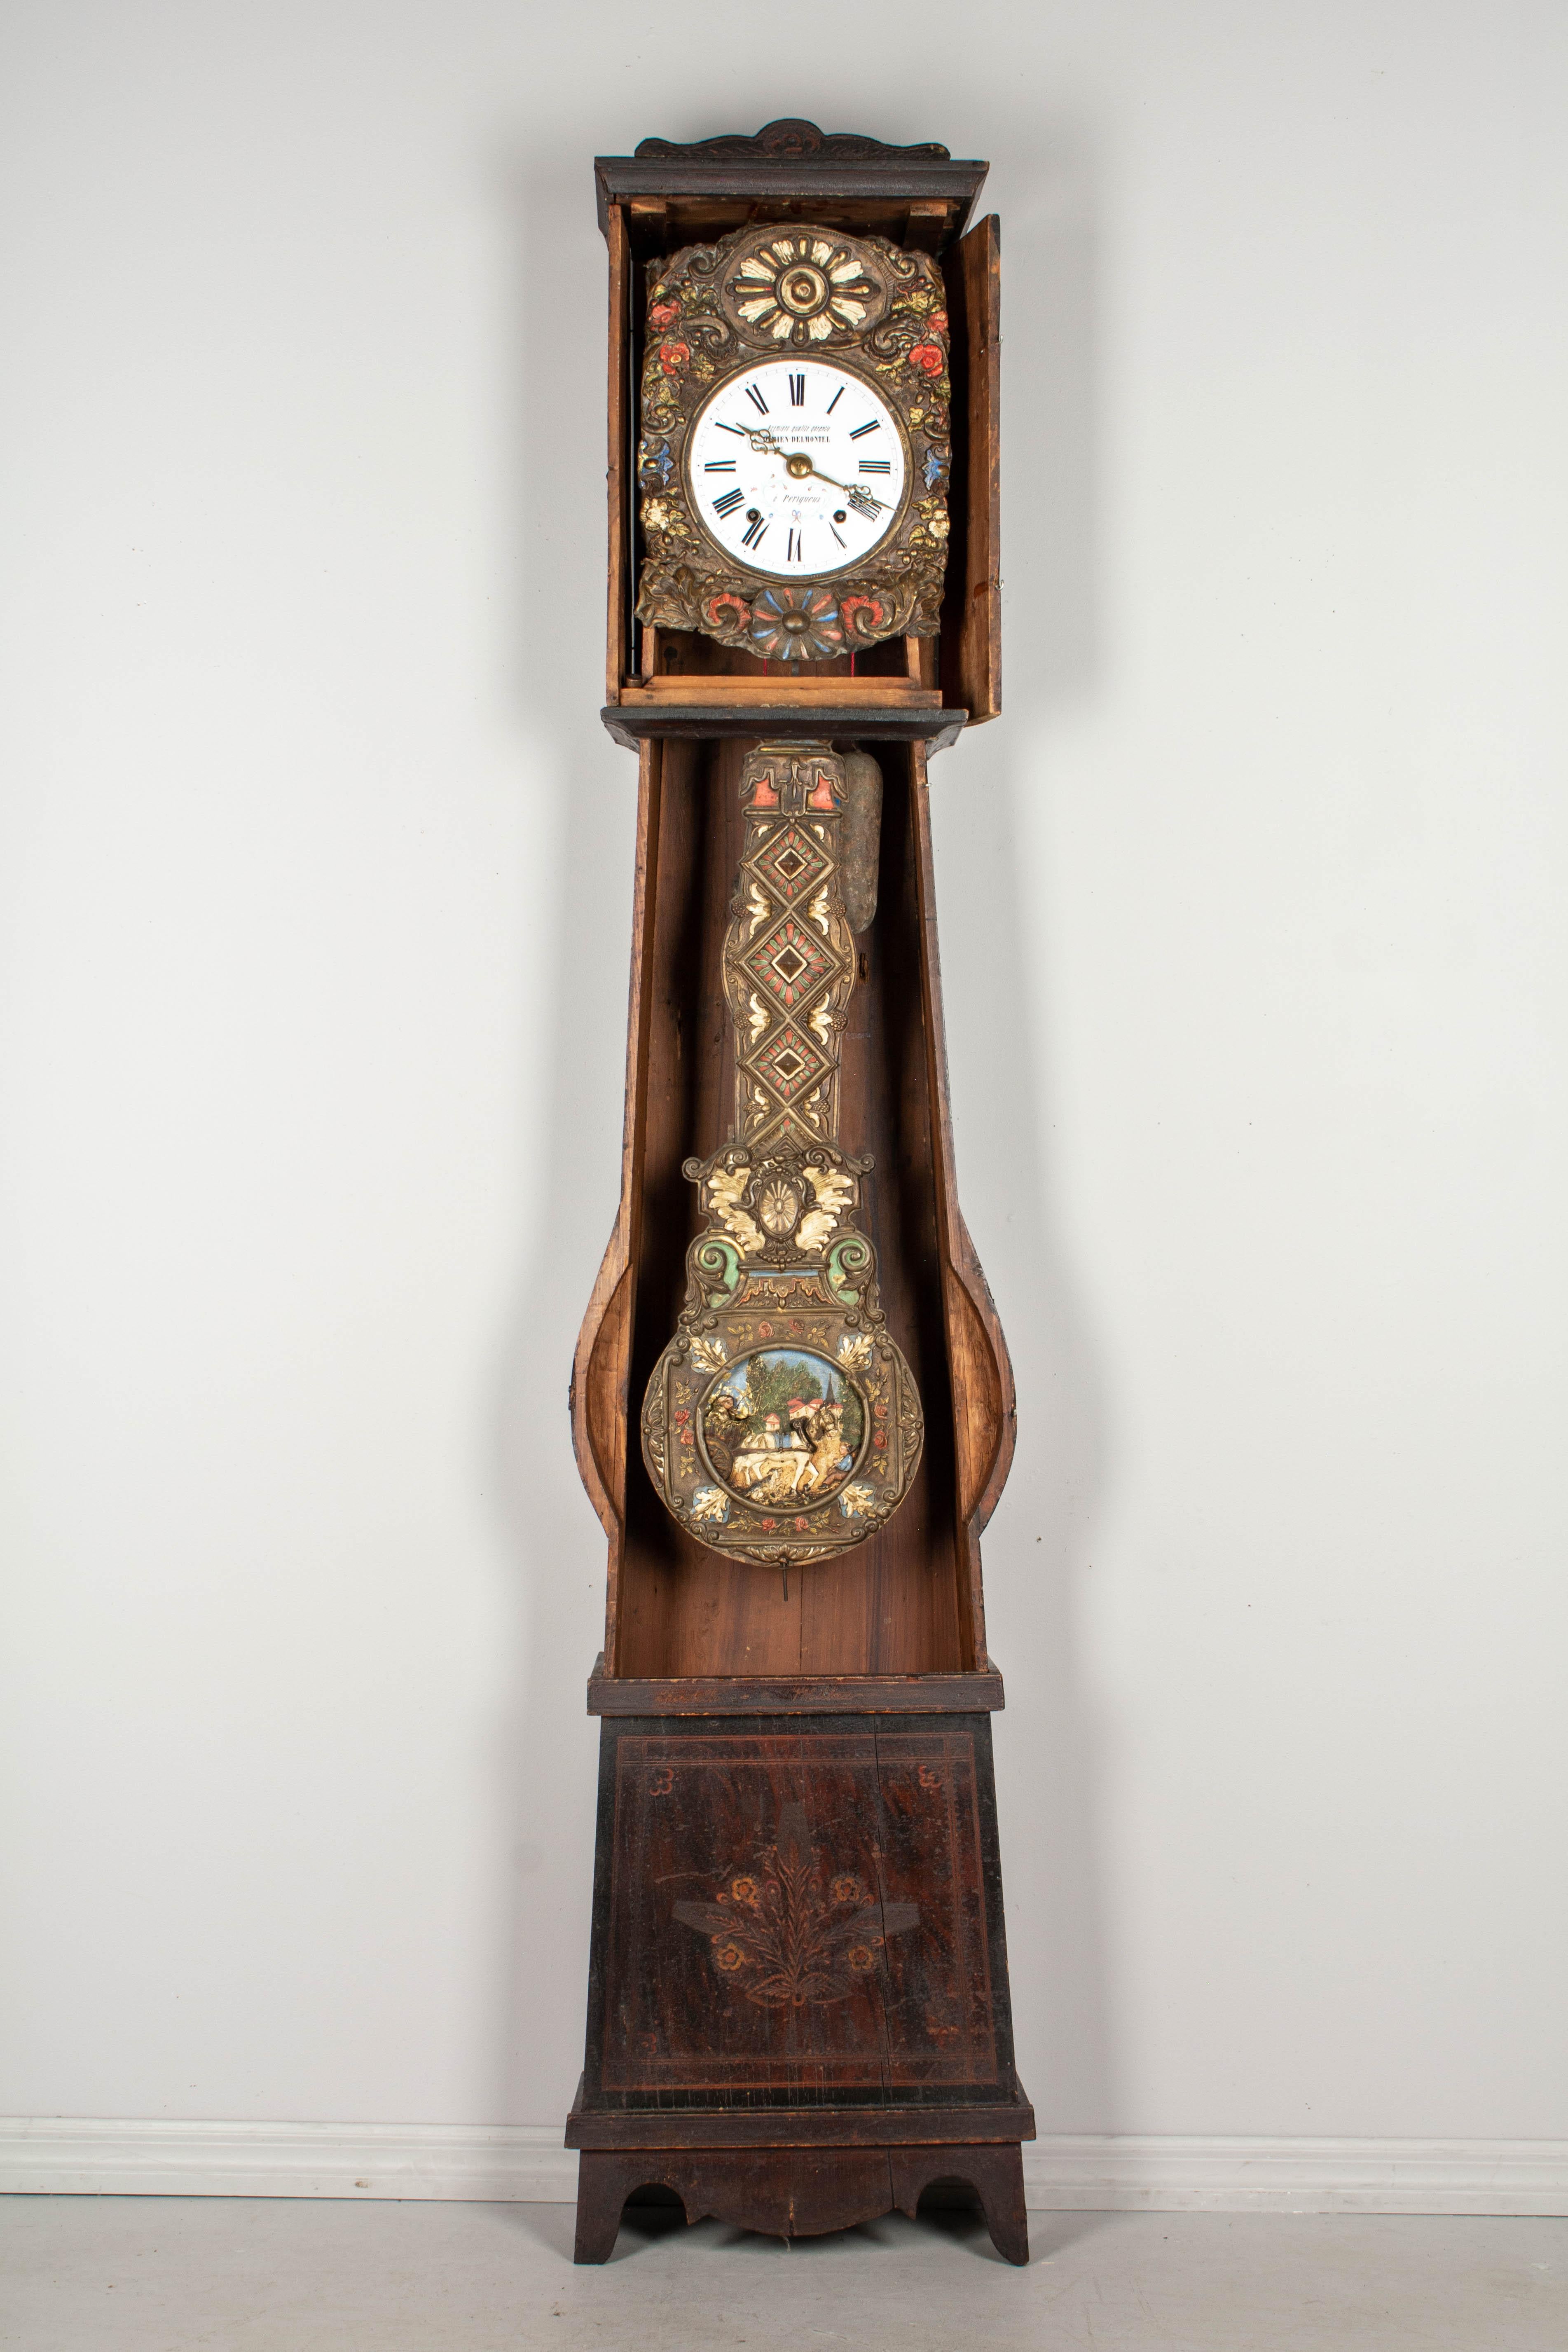 comtoise clock